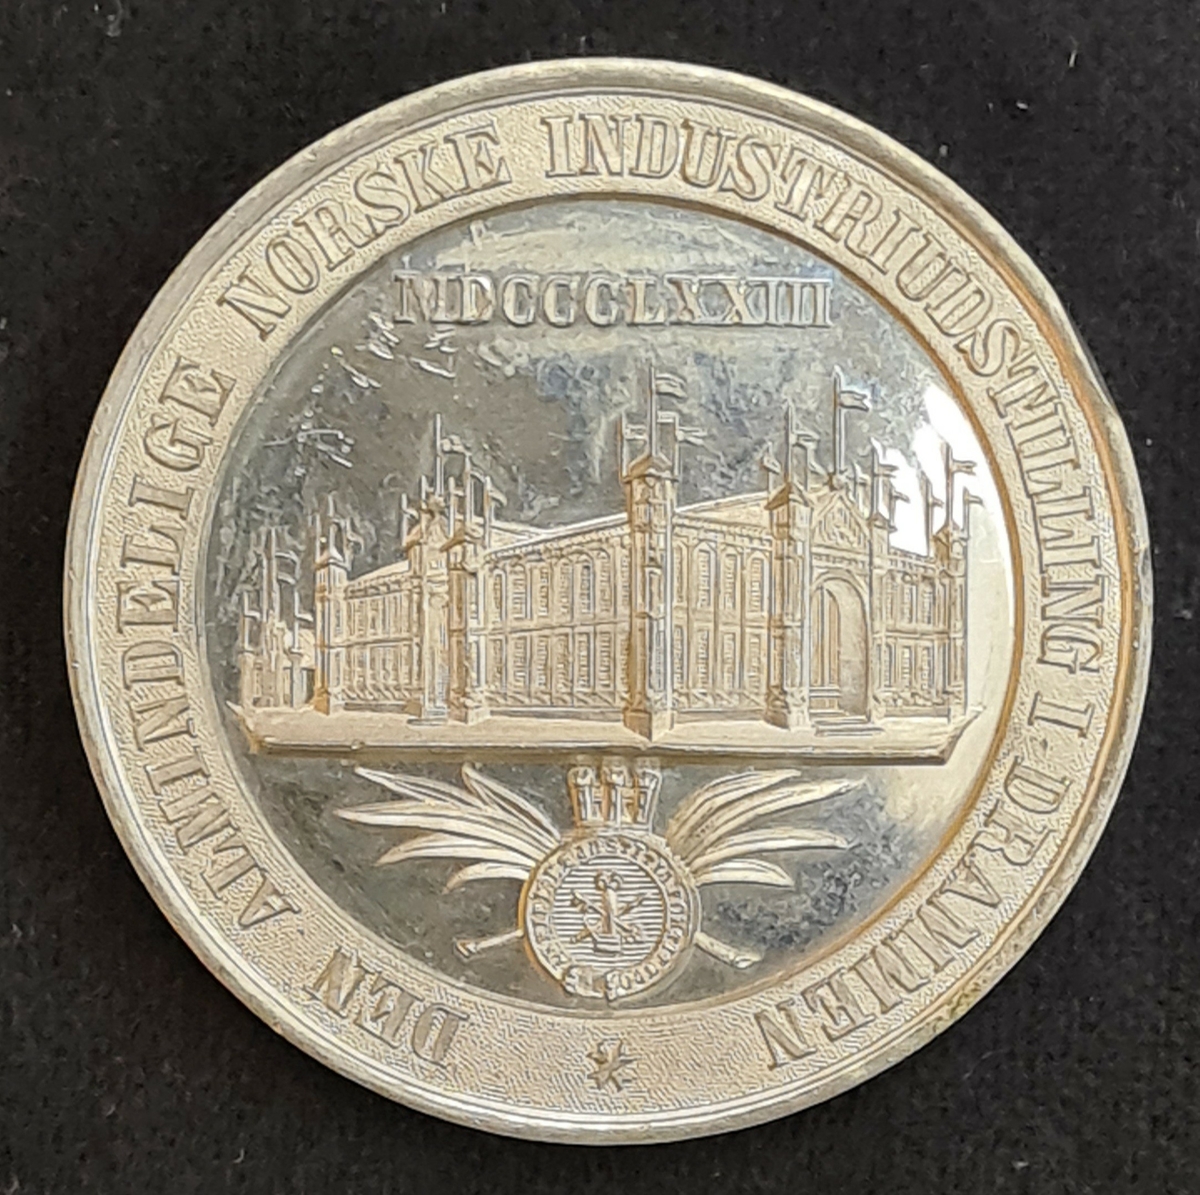 Medalj från Industriutställningen i Drammen, Tyskland år 1873.